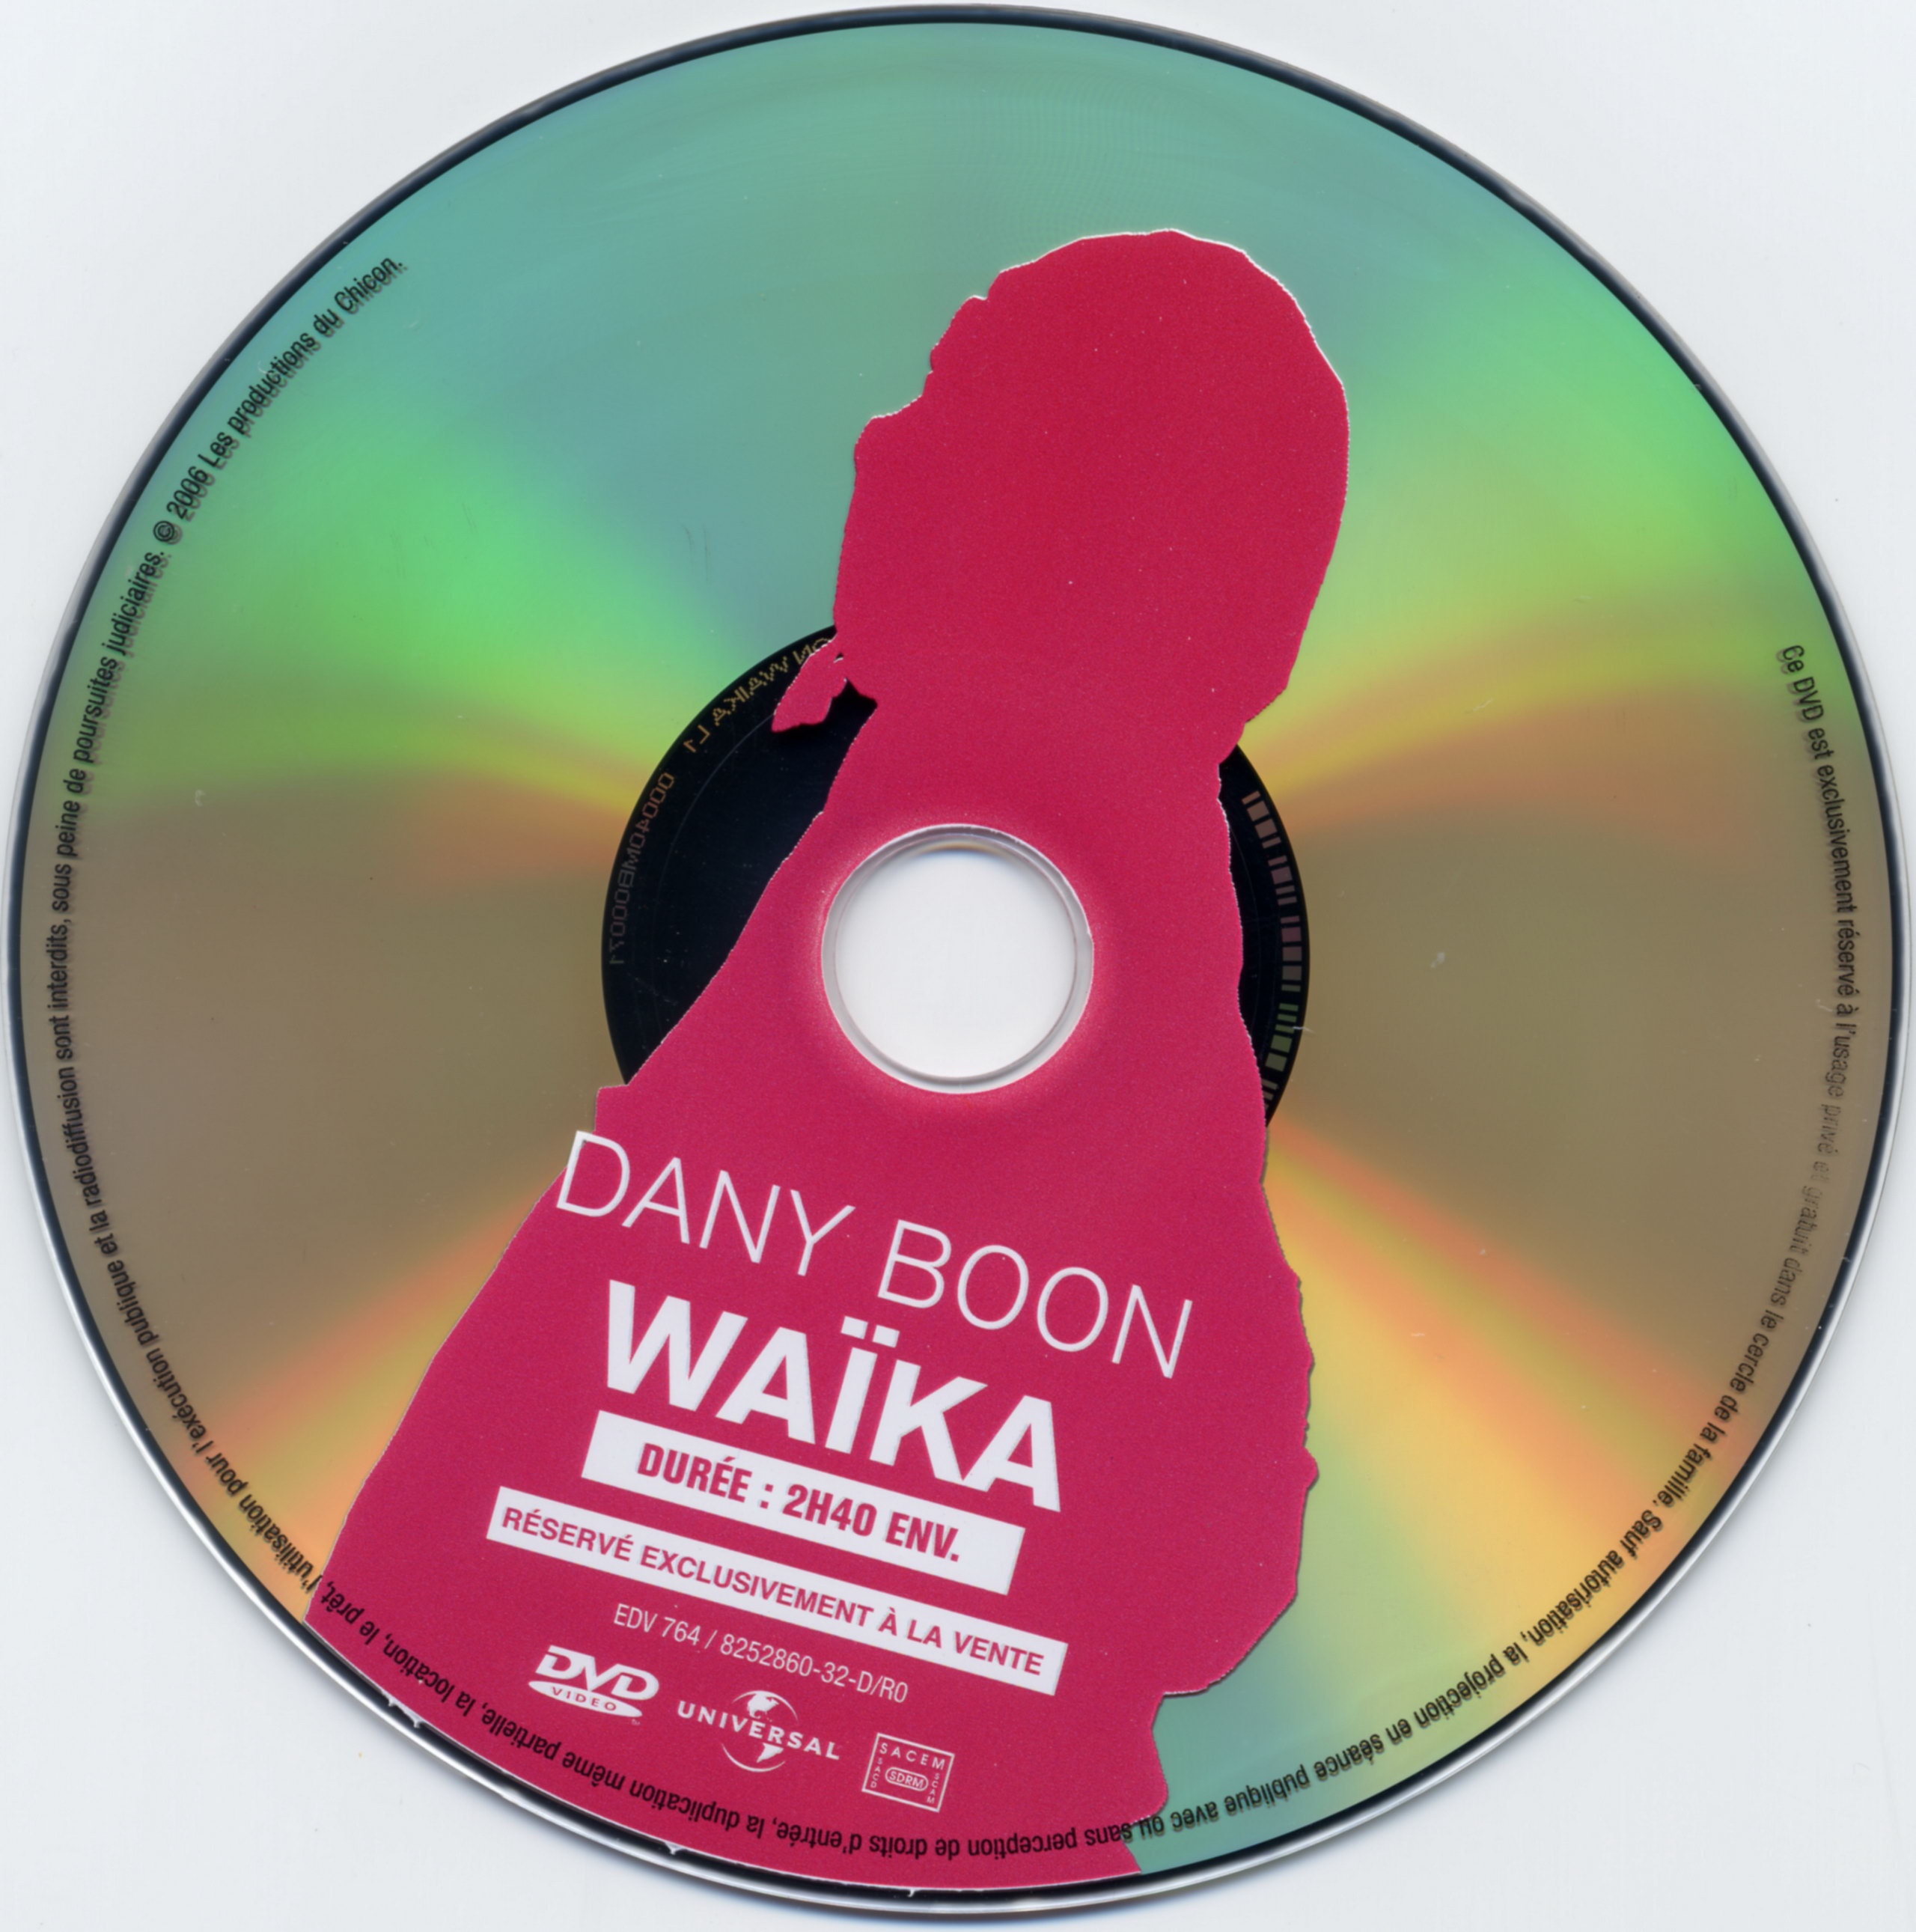 Dany Boon Waika v2